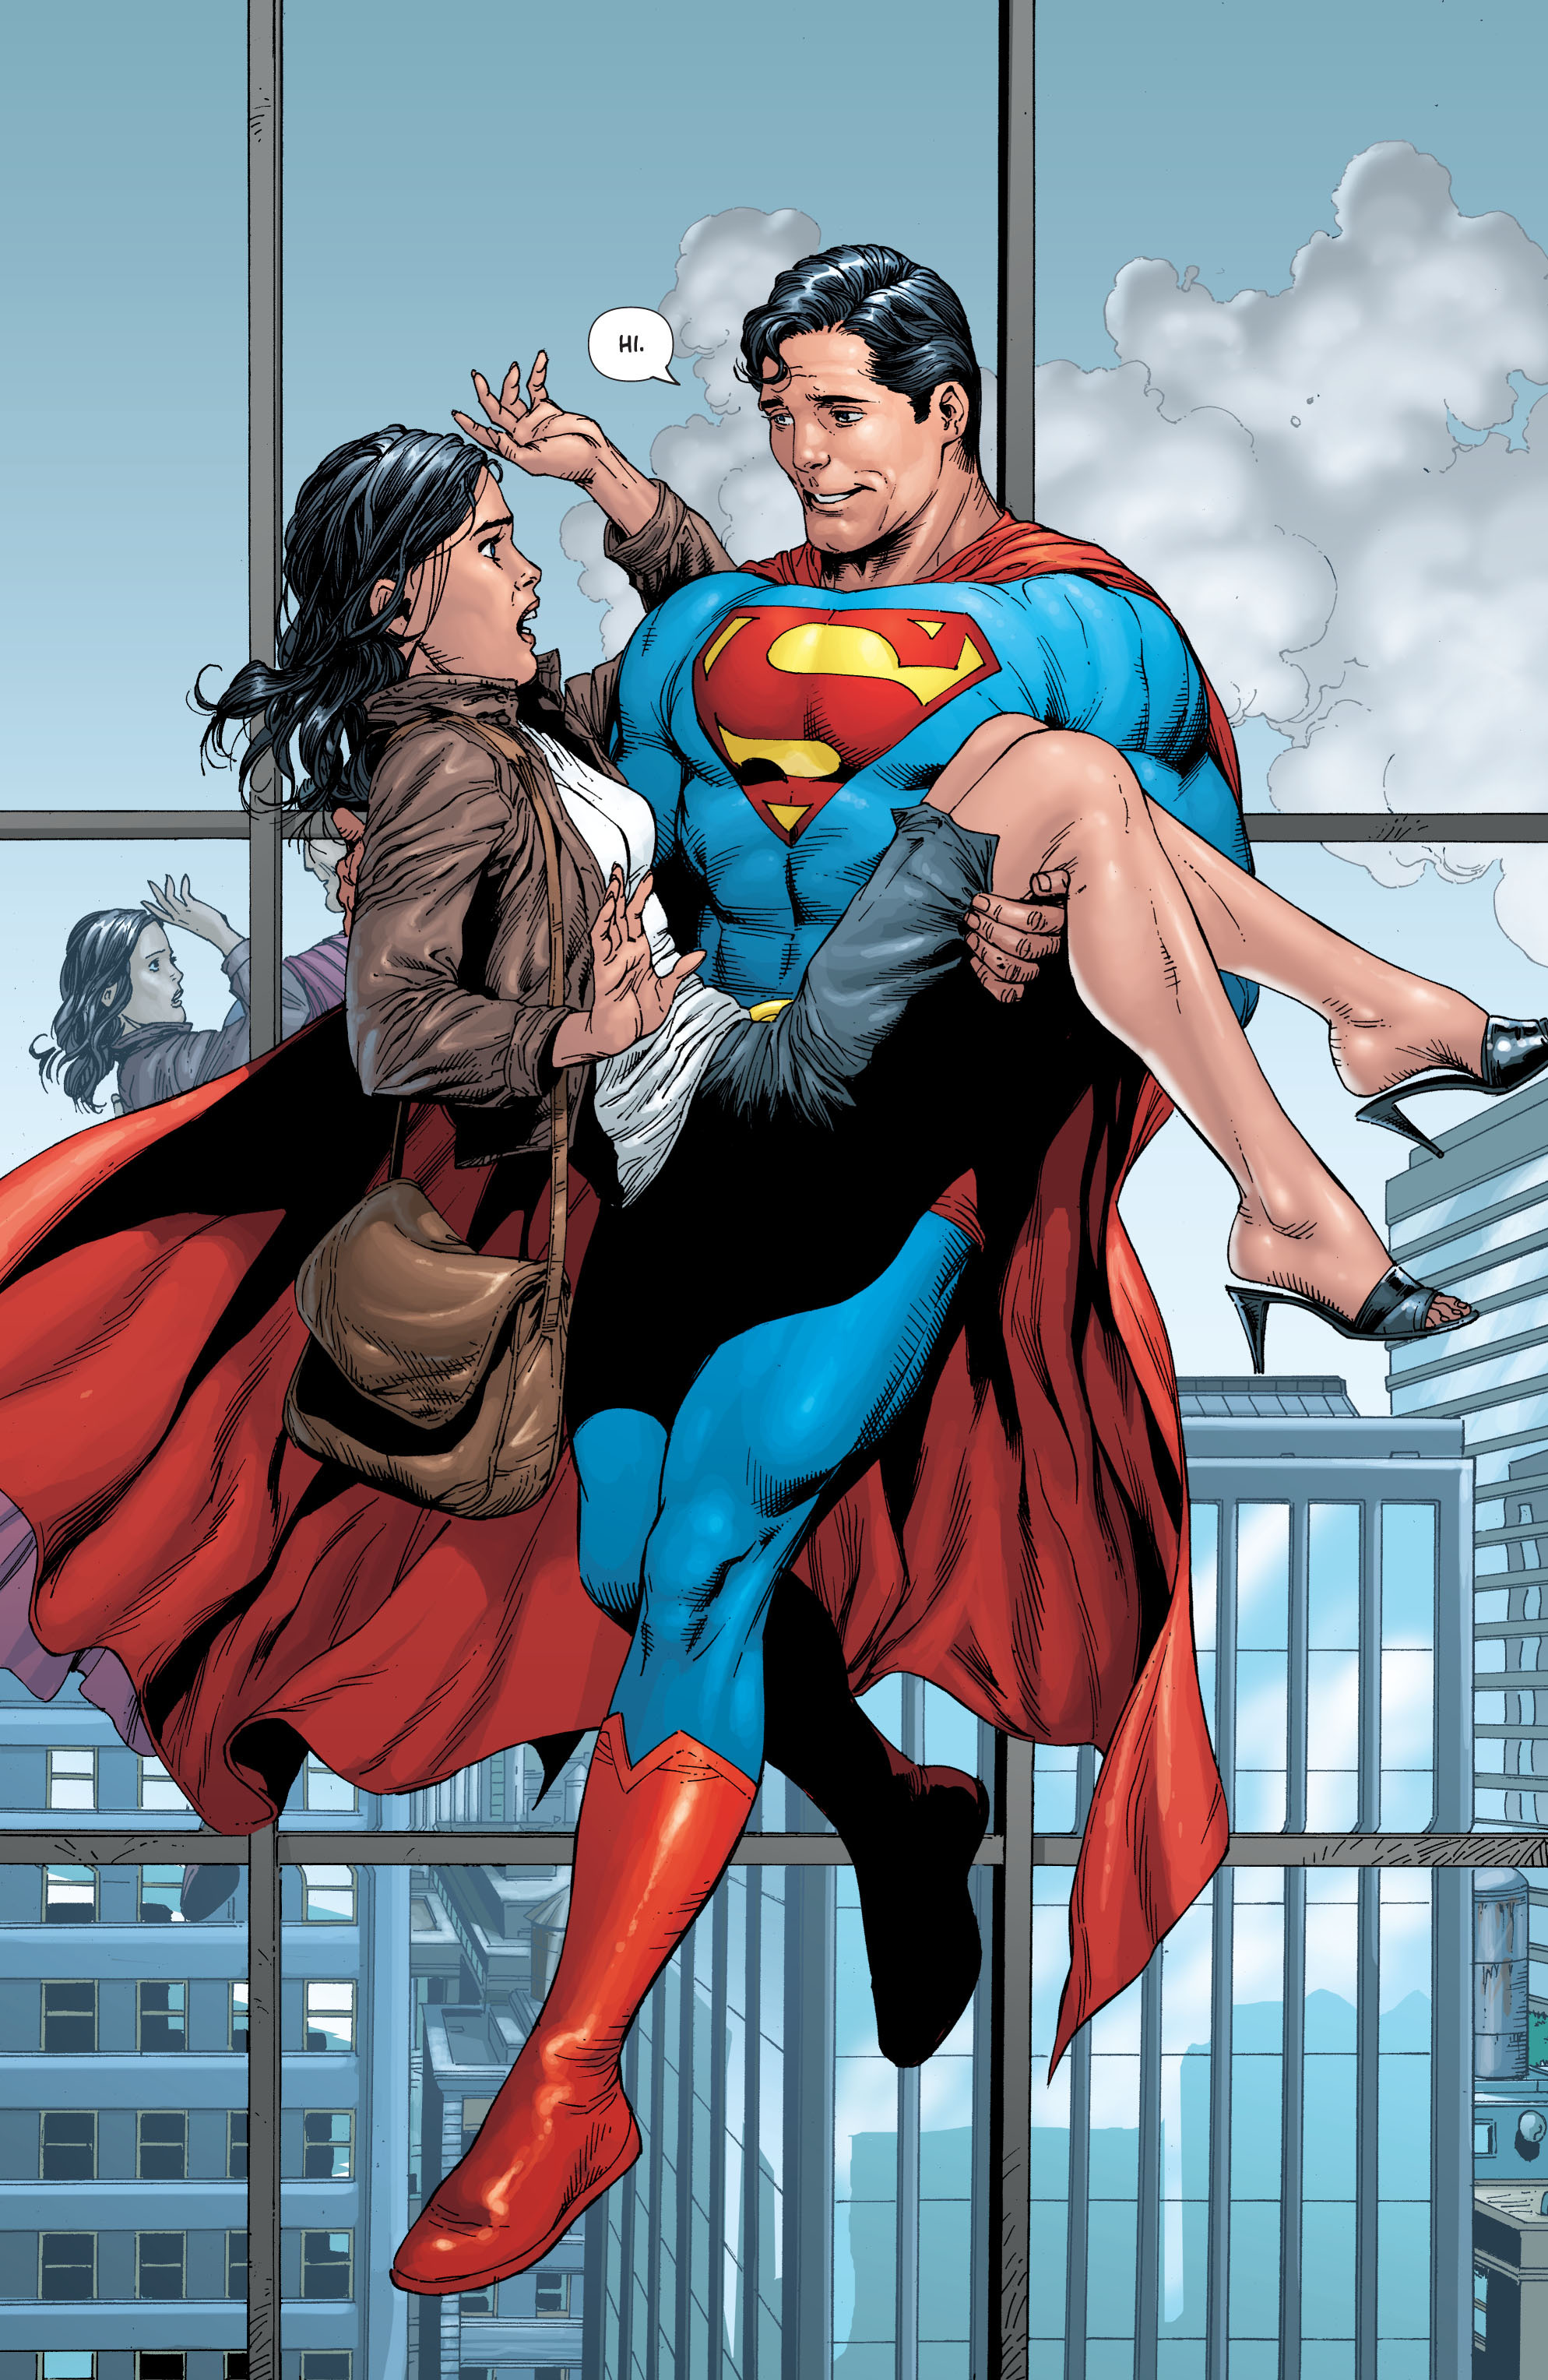 超人真的是地球上最强的超级英雄吗?其实他只想当一个普通人!